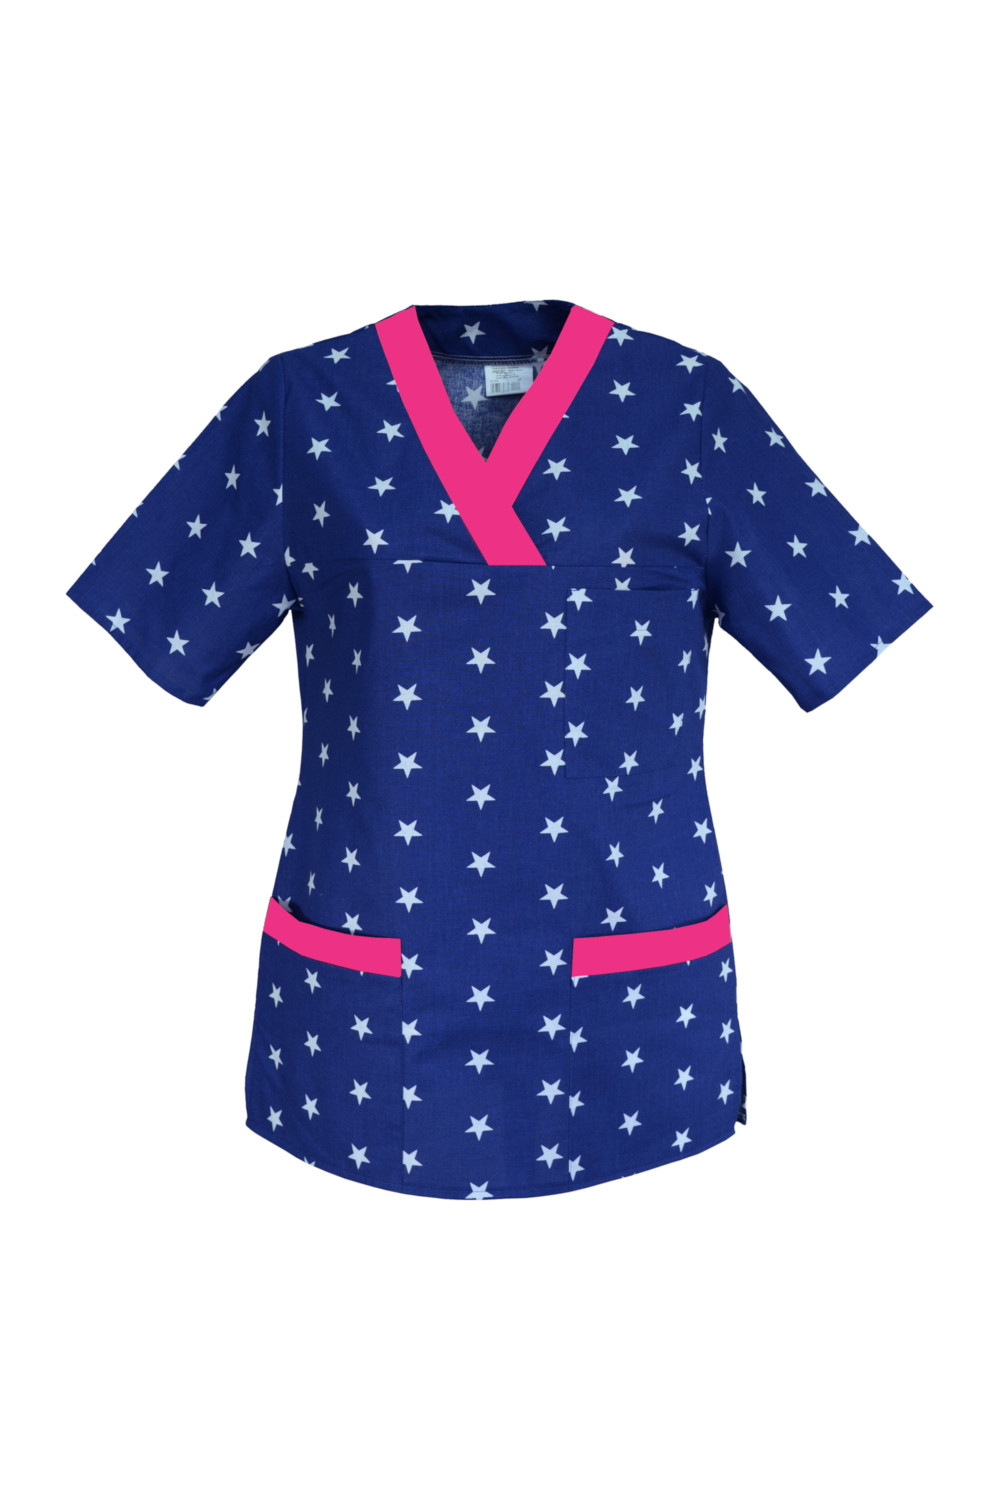 M-074G bluza medyczna damska we wzorki, kolorowa. Wzór białe gwiazdki na granacie z amarantem